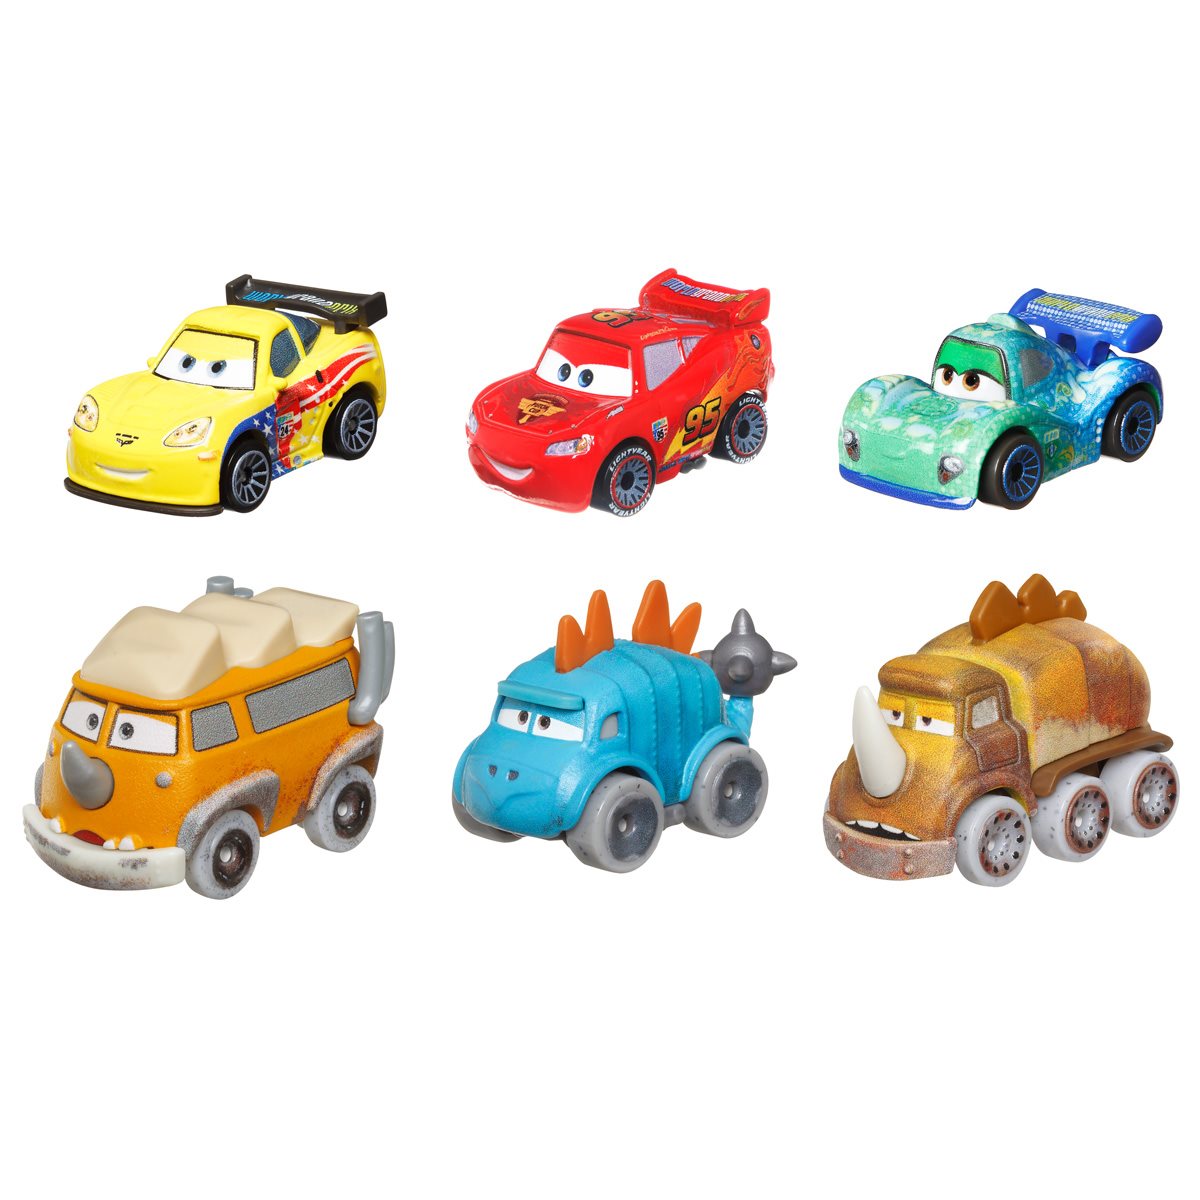 Cars - Mini Racers (varios modelos), Cars